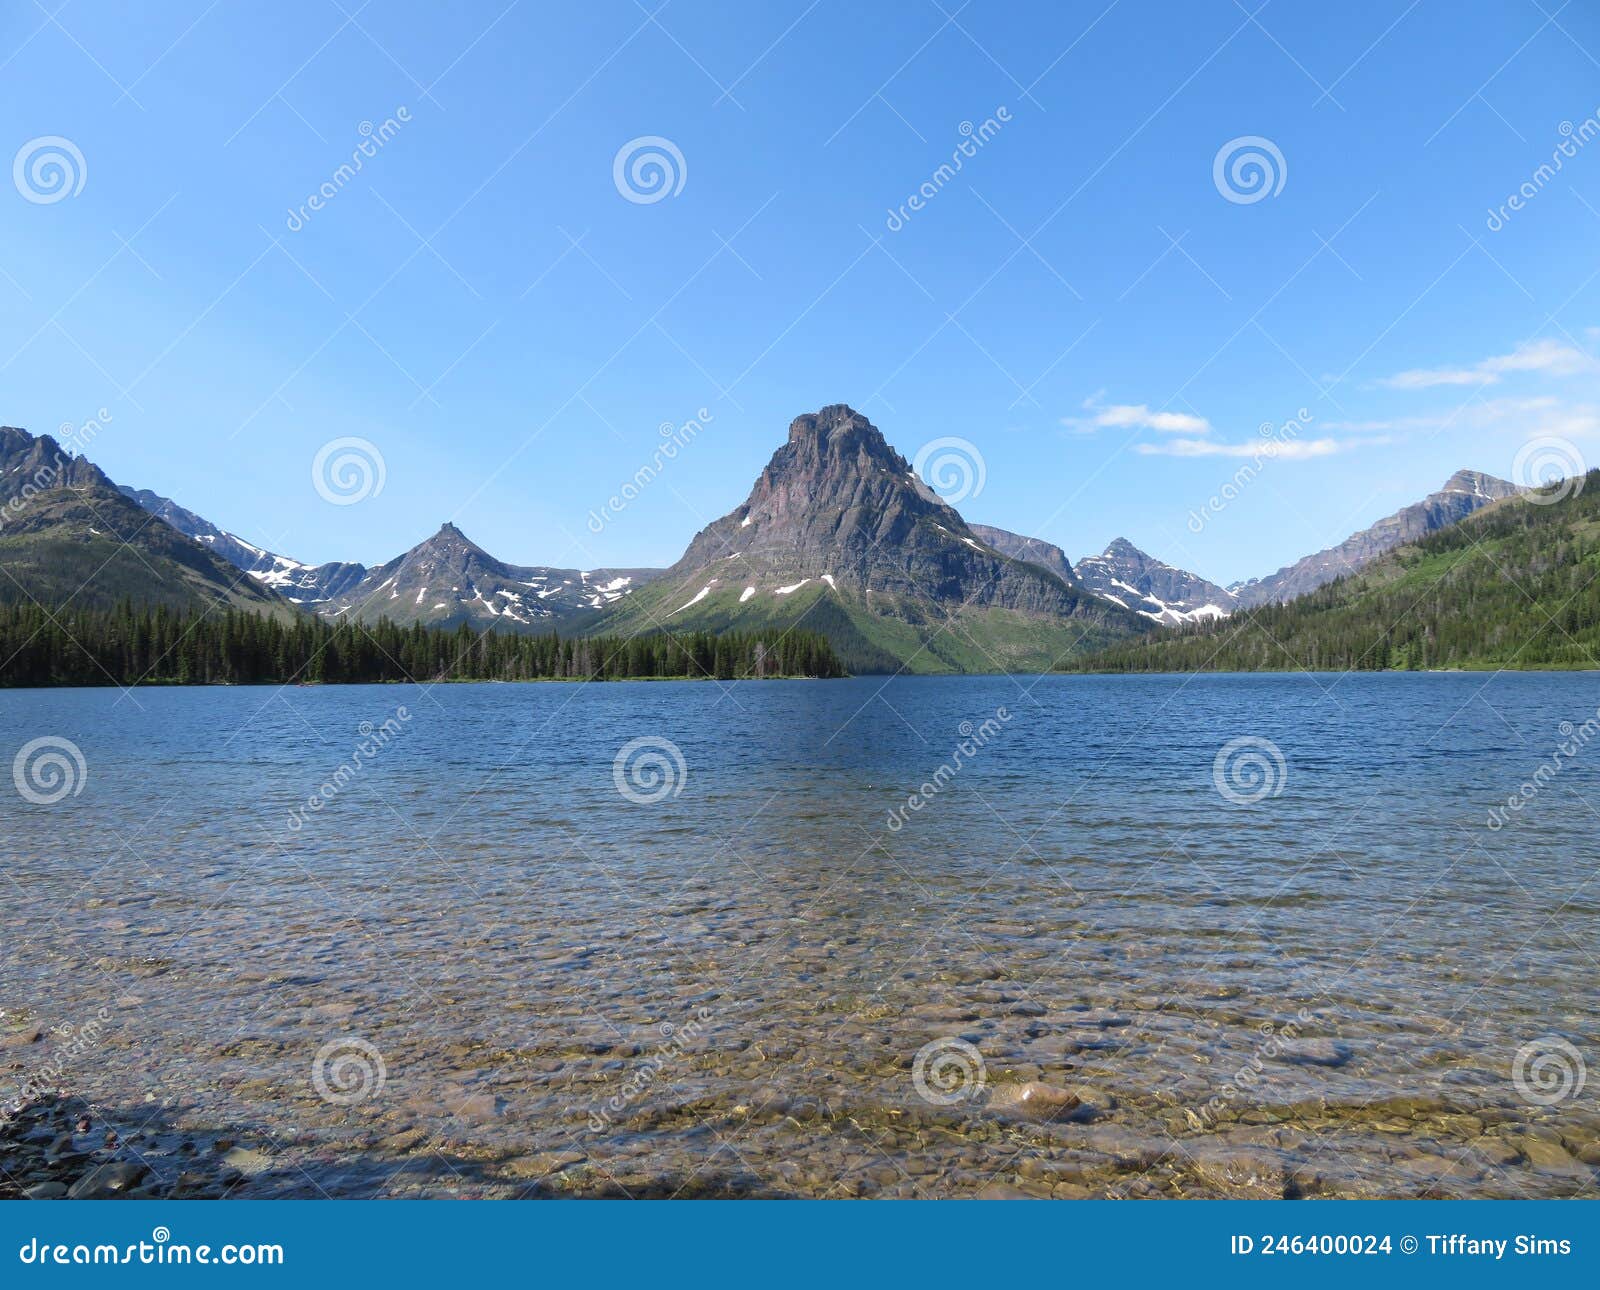 two medicine lake in glacier national park in montana